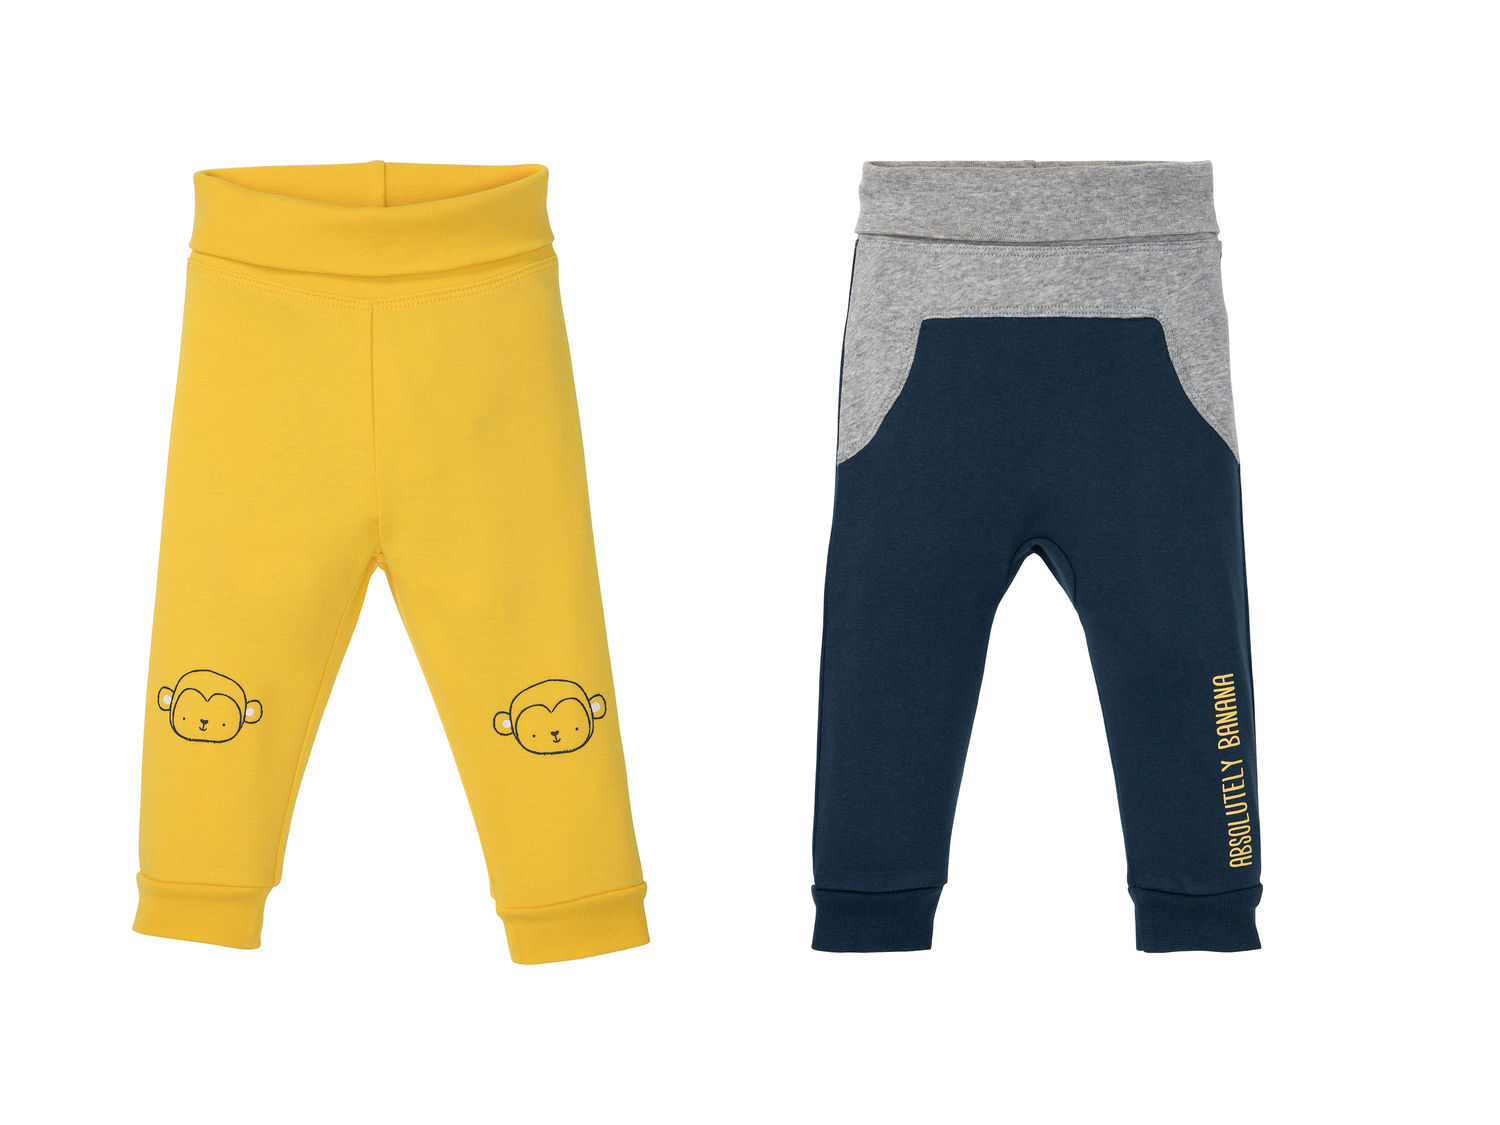 Pantalons molletonnés bébé , le prix 3.99 &#8364; 
- Du 0-2 mois (50-56 cm) ...